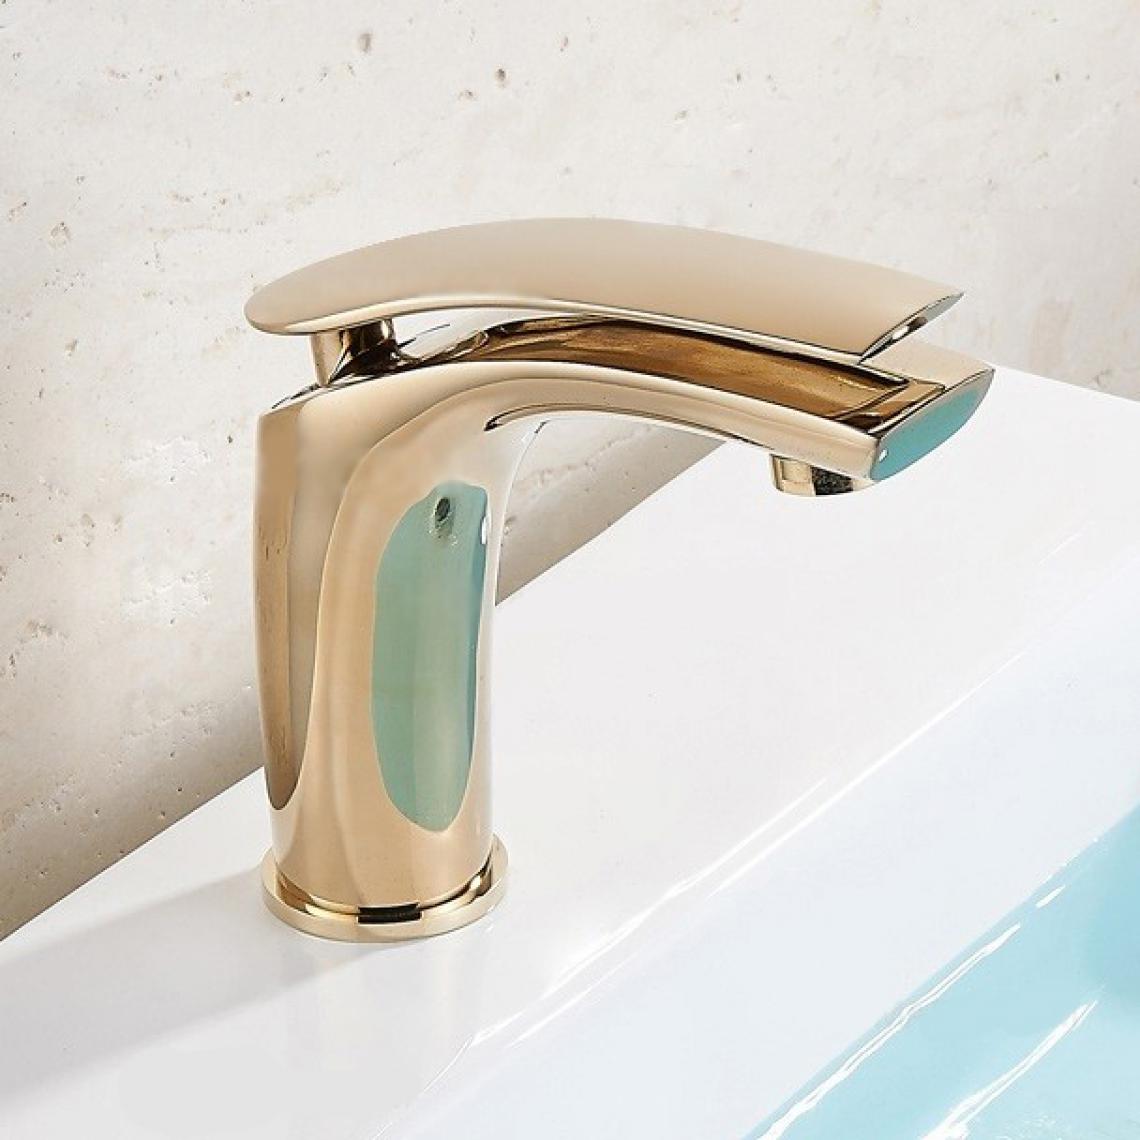 Lookshop - Robinet lavabo mitigeur contemporain en diverses finitions doré - Robinet de lavabo